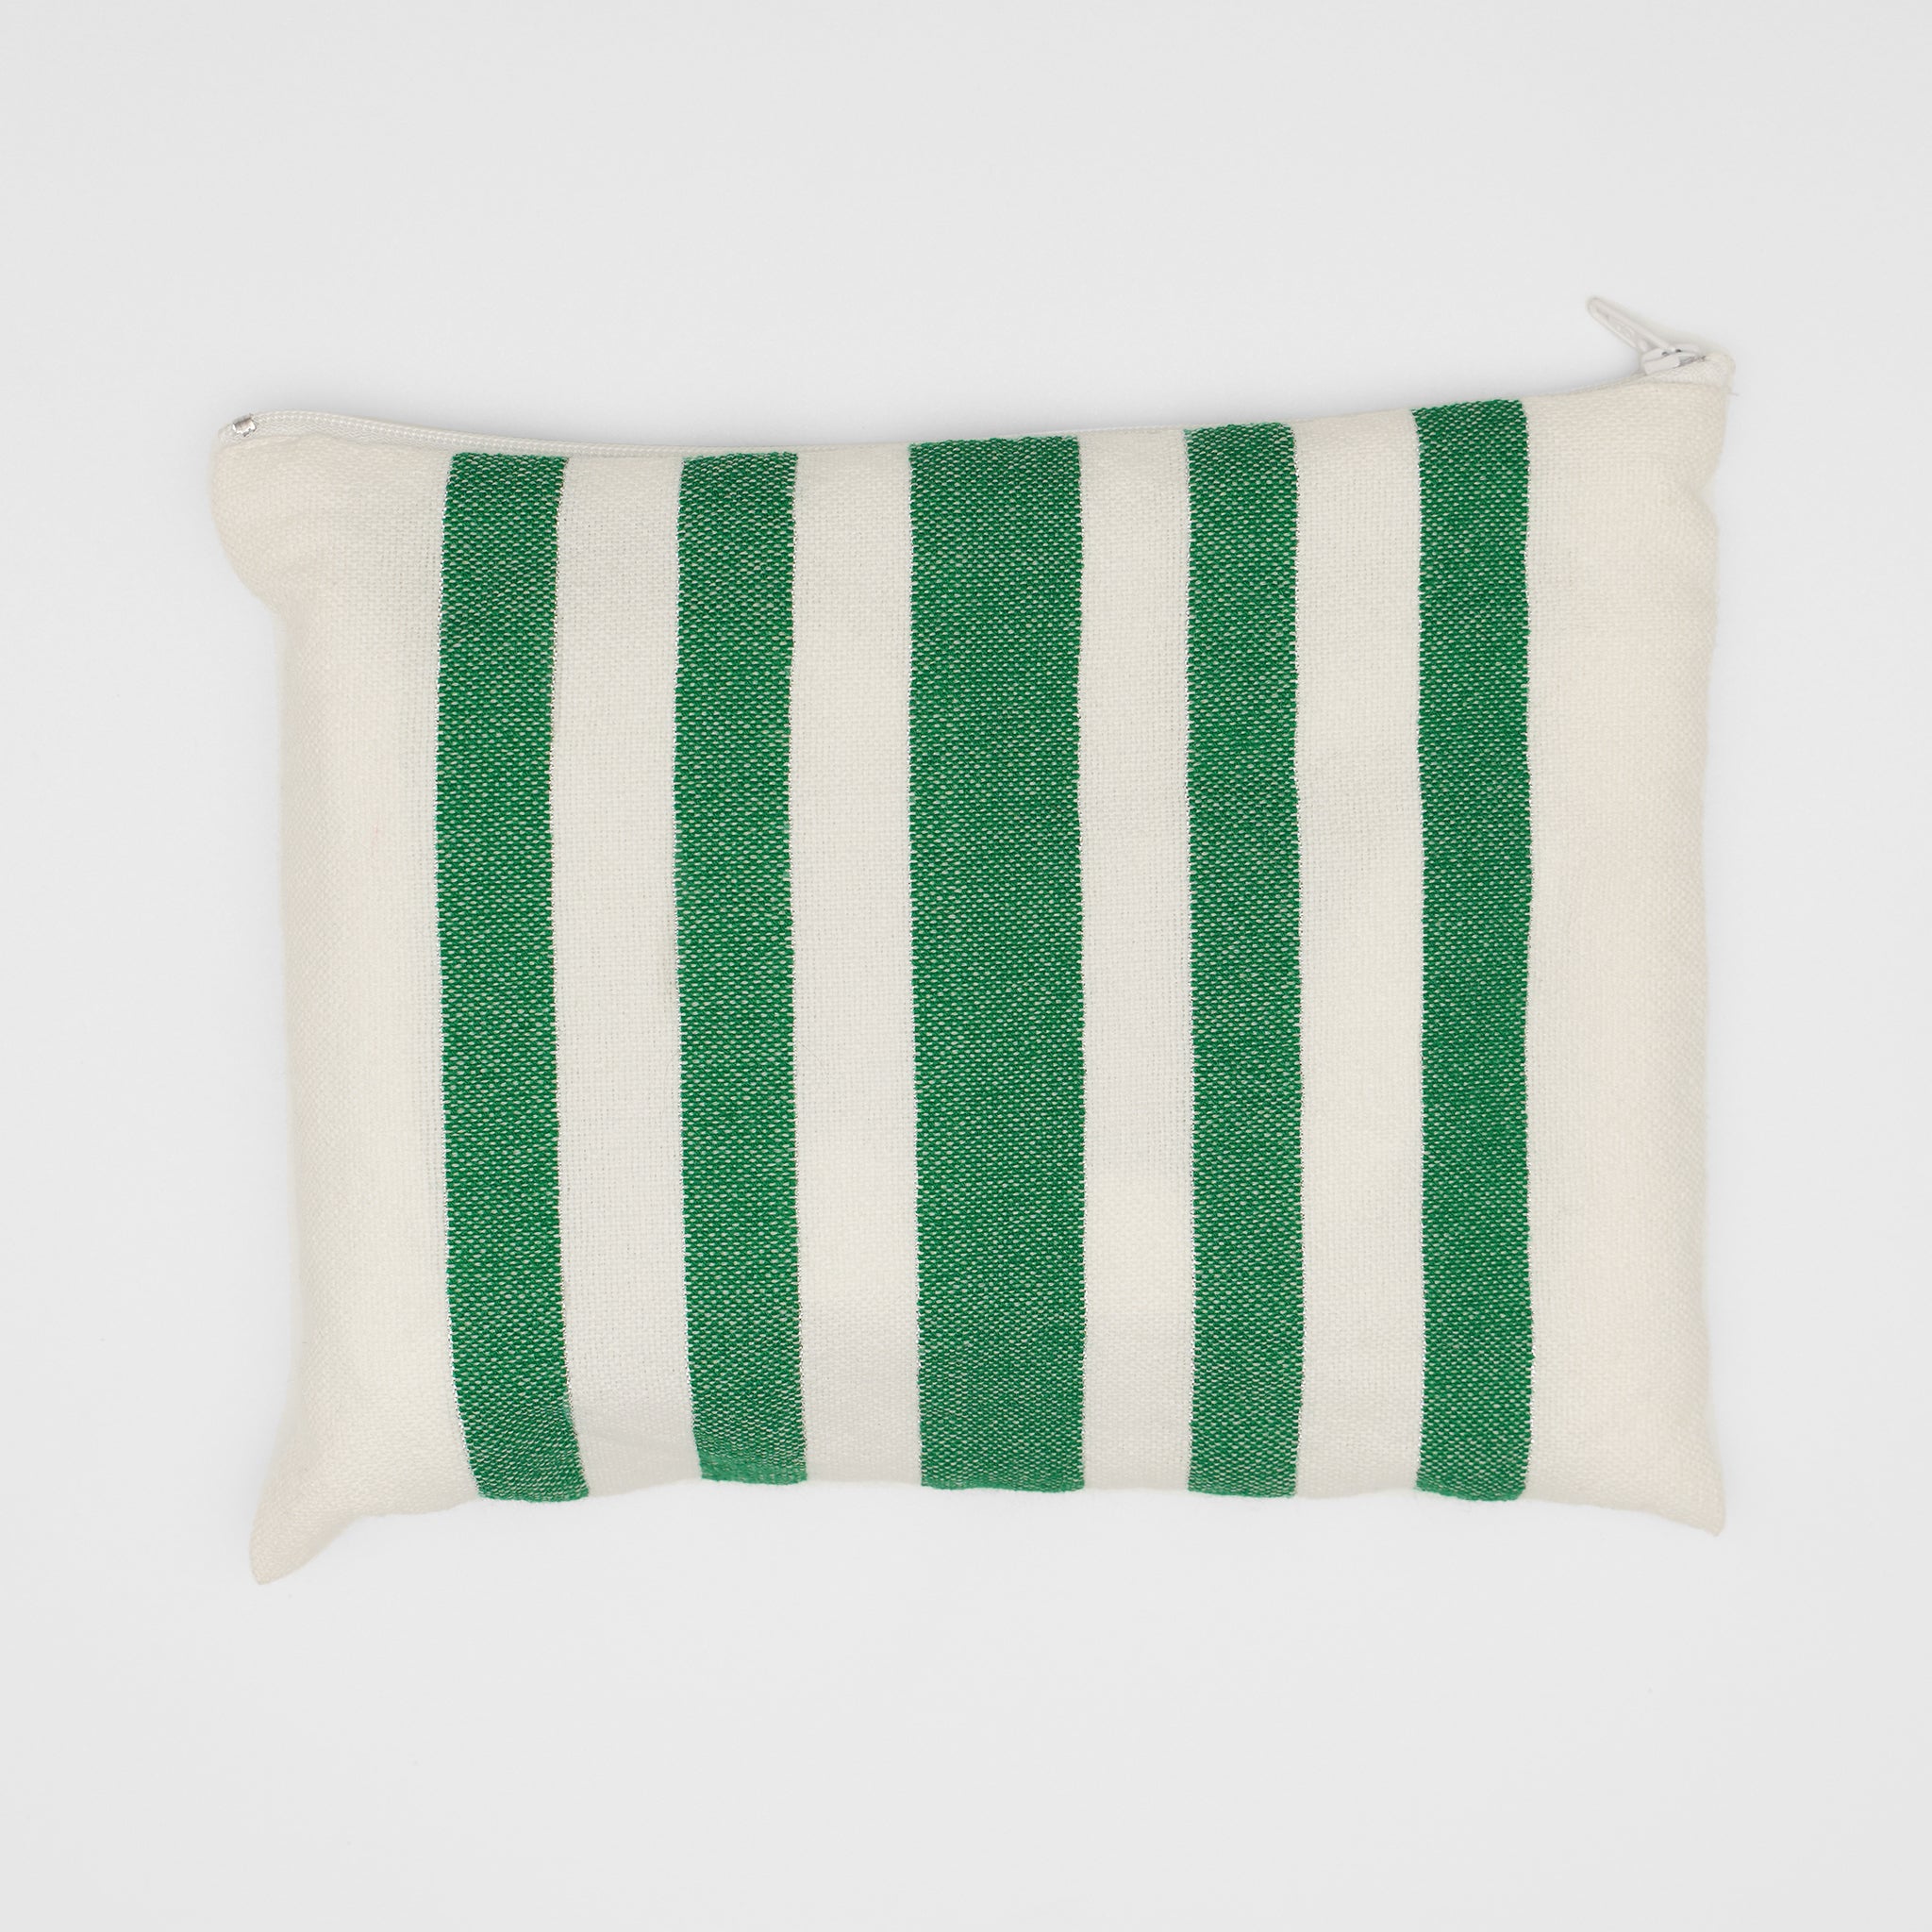 David - Wool Tallit - Green on White